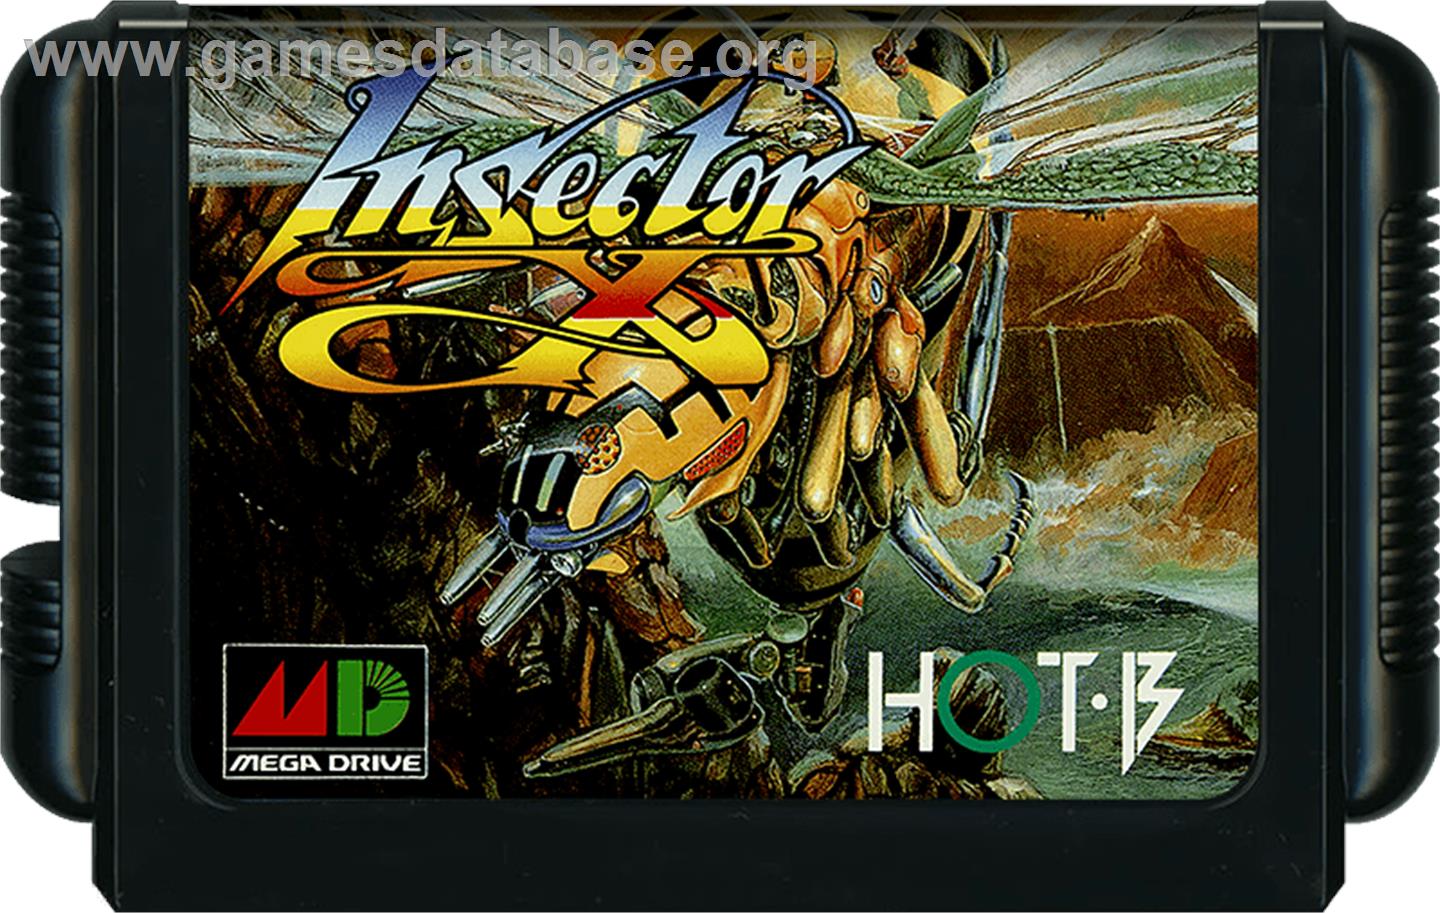 Insector-X - Sega Genesis - Artwork - Cartridge